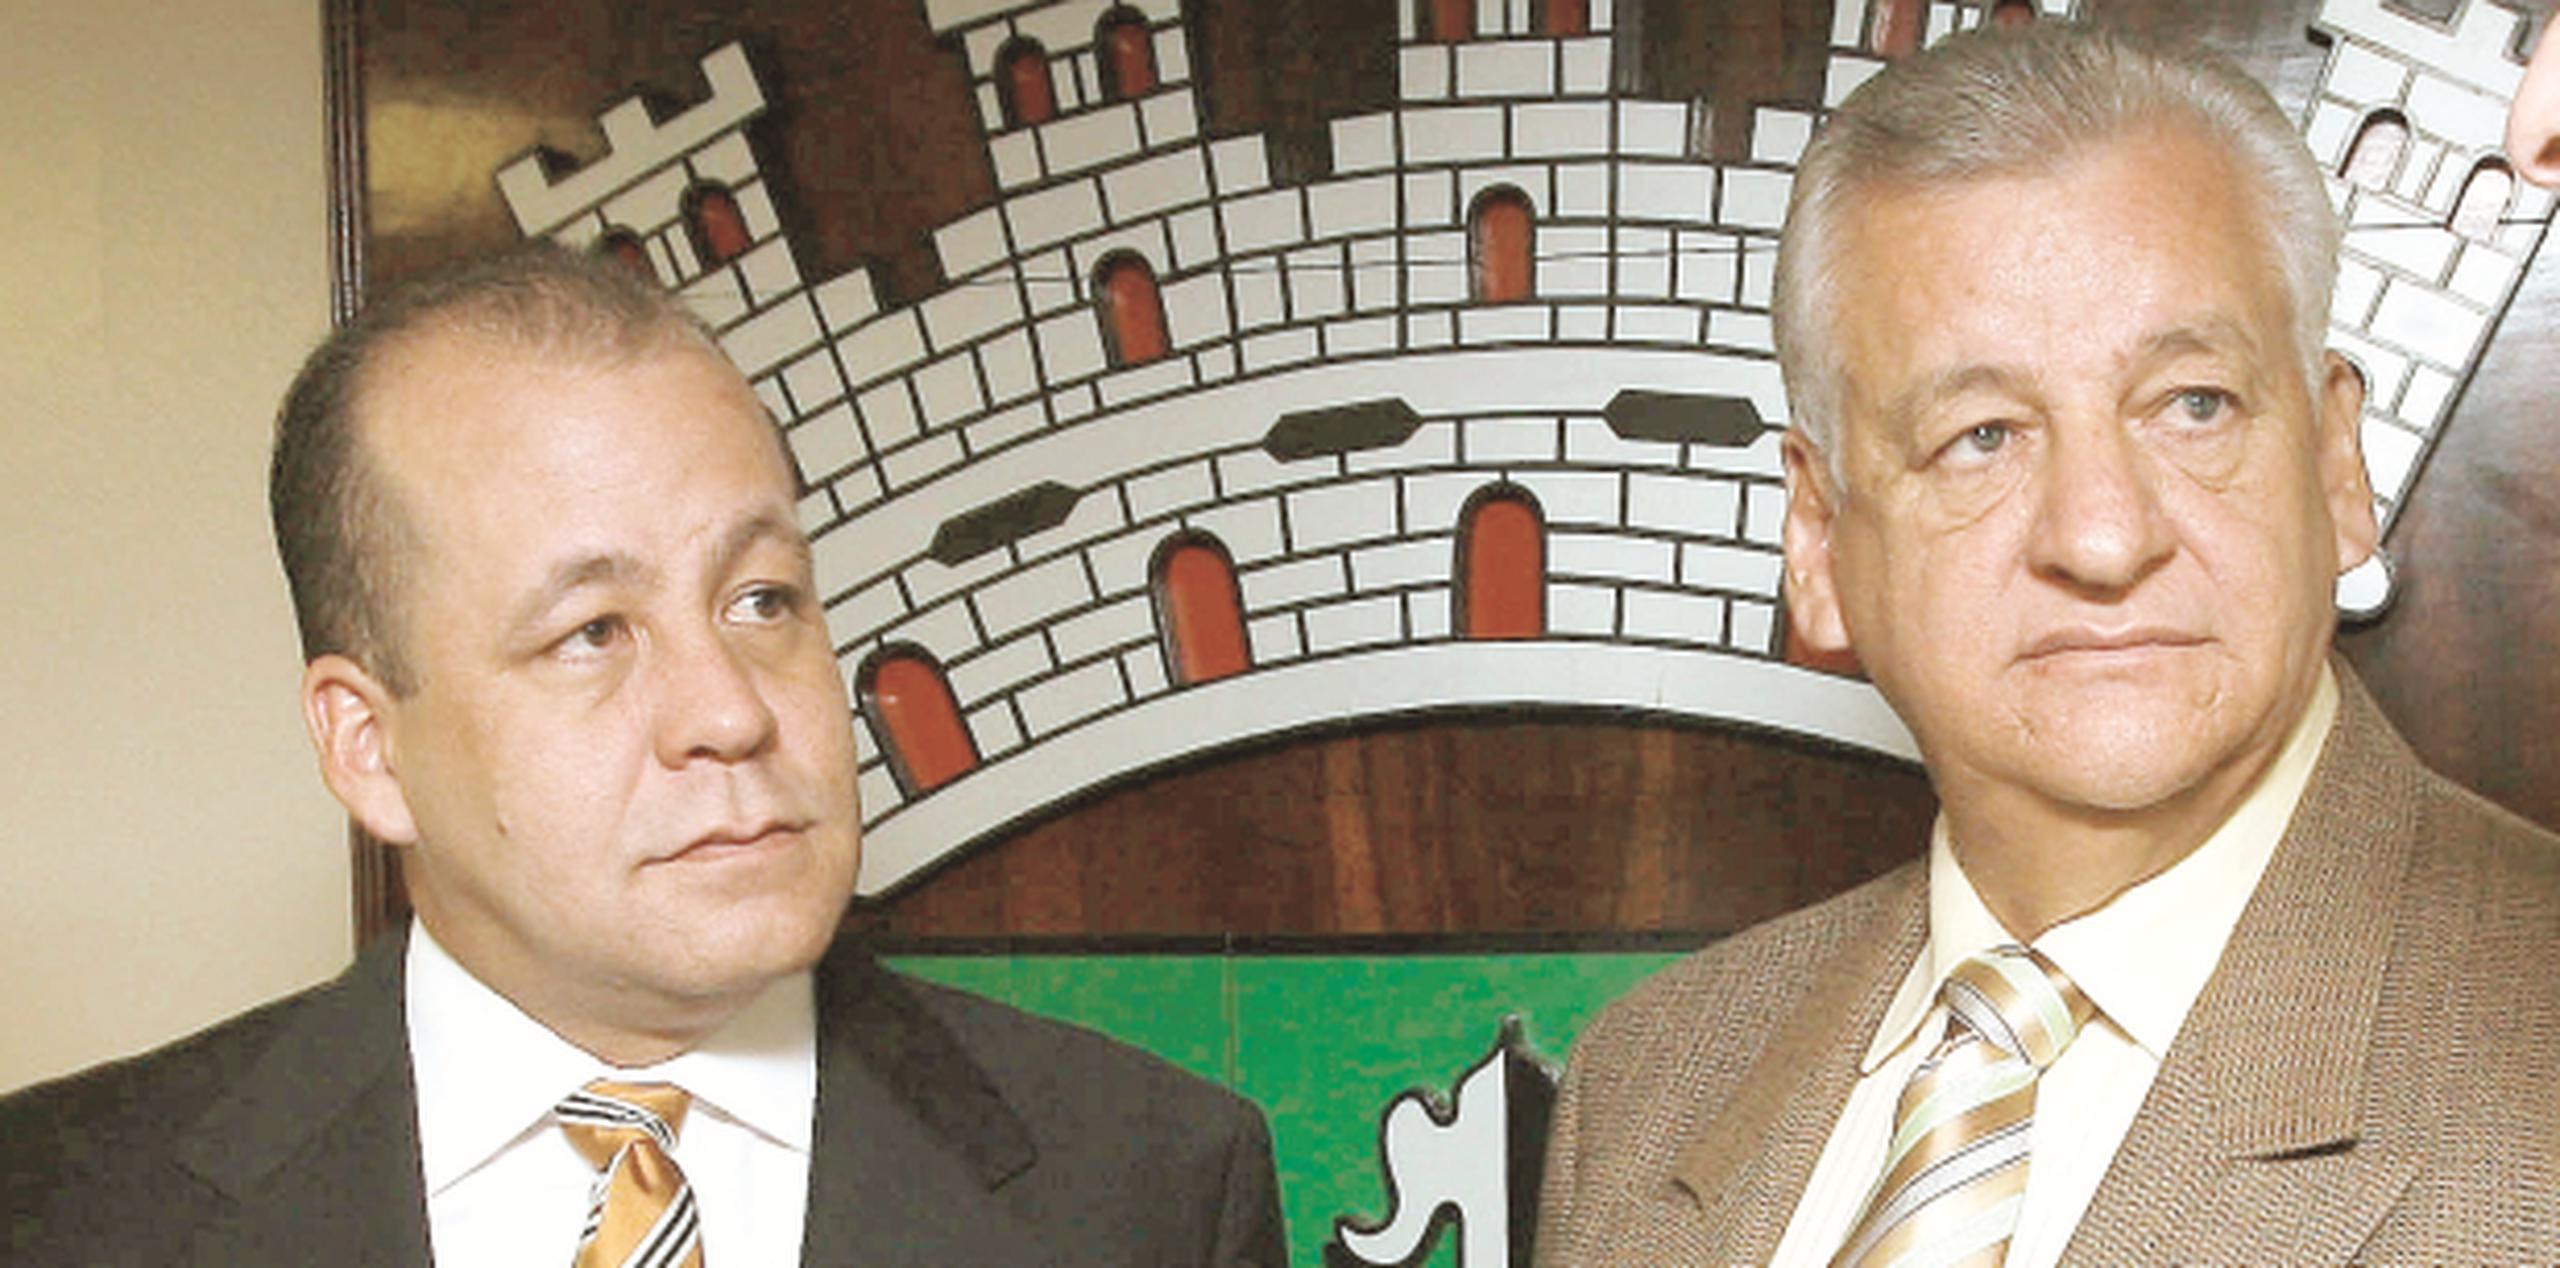 Héctor O’Neill Rosa y su padre, el alcalde de Guaynabo Héctor O’Neill García (Archivo)